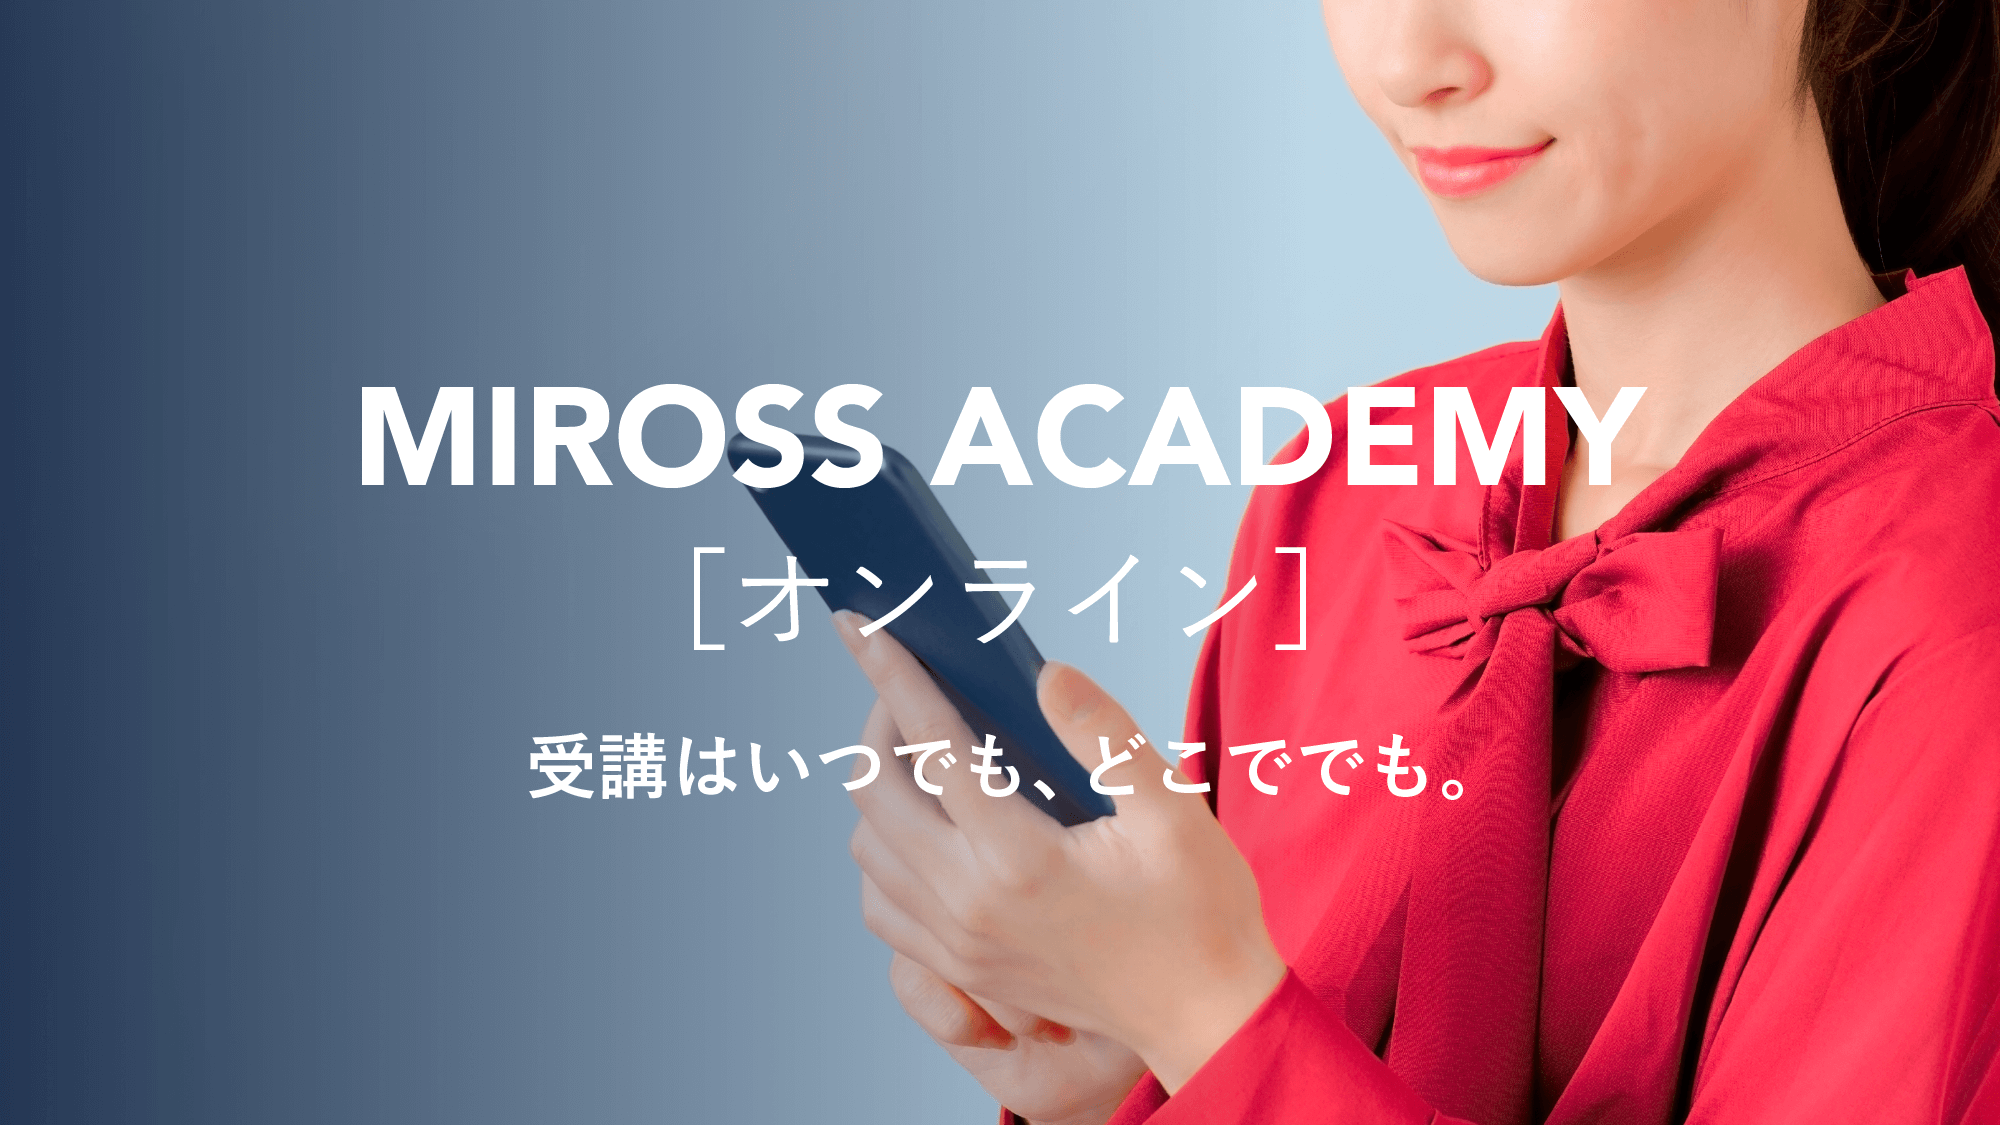 オンラインで学べるミロスアカデミーの講座がスタート